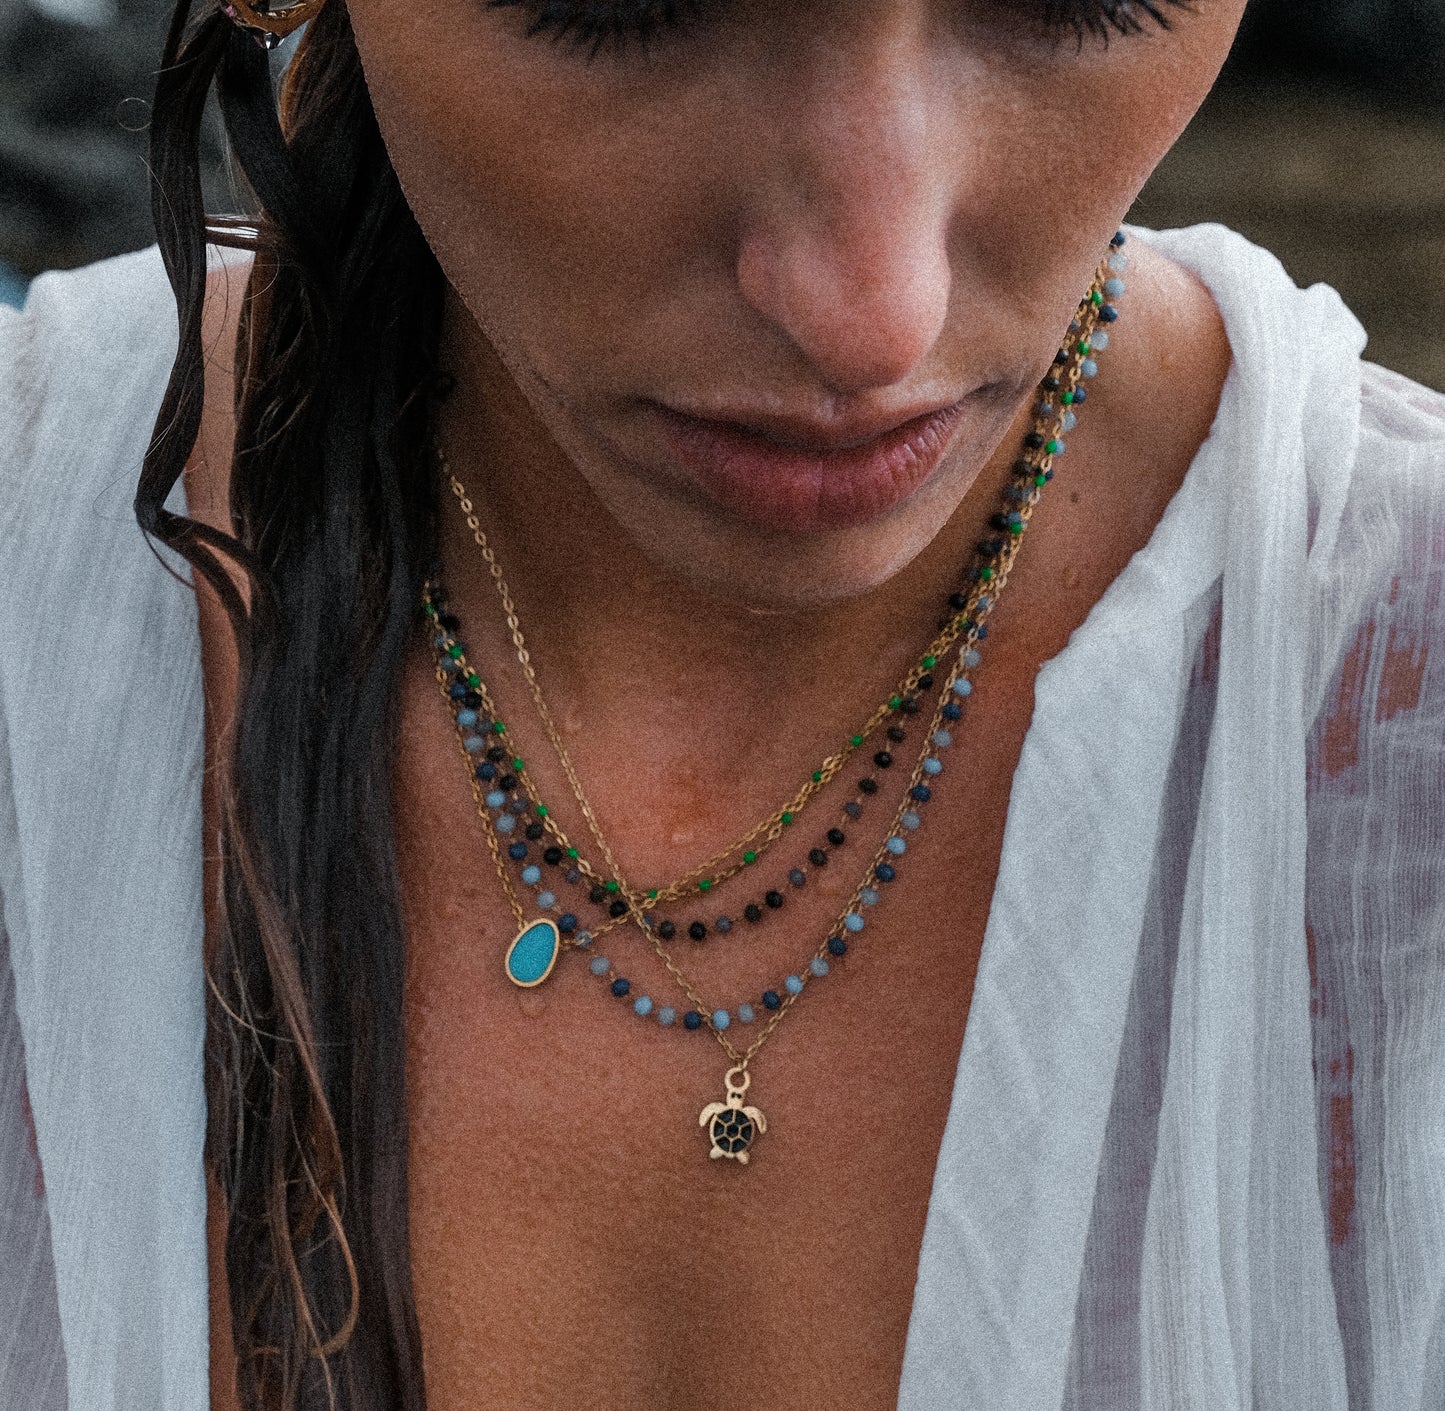 Turtle necklace waterproof ailana jewelry. Bigiotteria resistente all'acqua